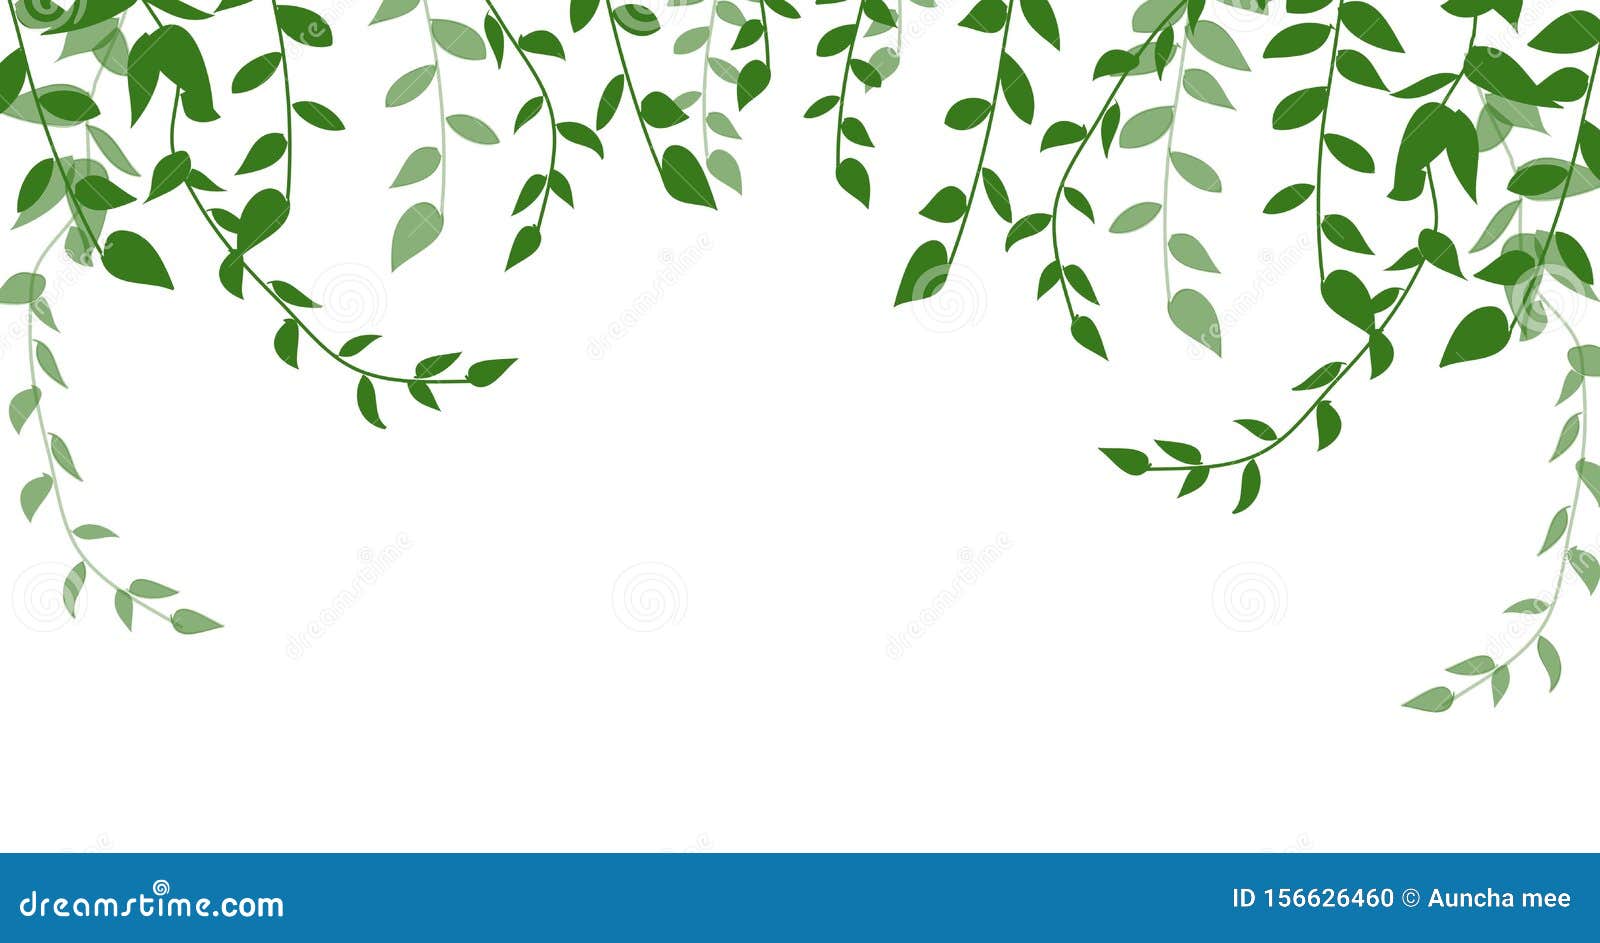 Bạn đang tìm kiếm một hình ảnh về lá cây xanh để sử dụng ở các thiết kế của mình? Vậy thì hãy xem ngay bức ảnh này với những chiếc lá xanh đơn độc tuyệt đẹp trên nền trắng tinh khiết. Đây sẽ là giải pháp hoàn hảo để tạo ra các đồ họa và sản phẩm đầy sáng tạo.